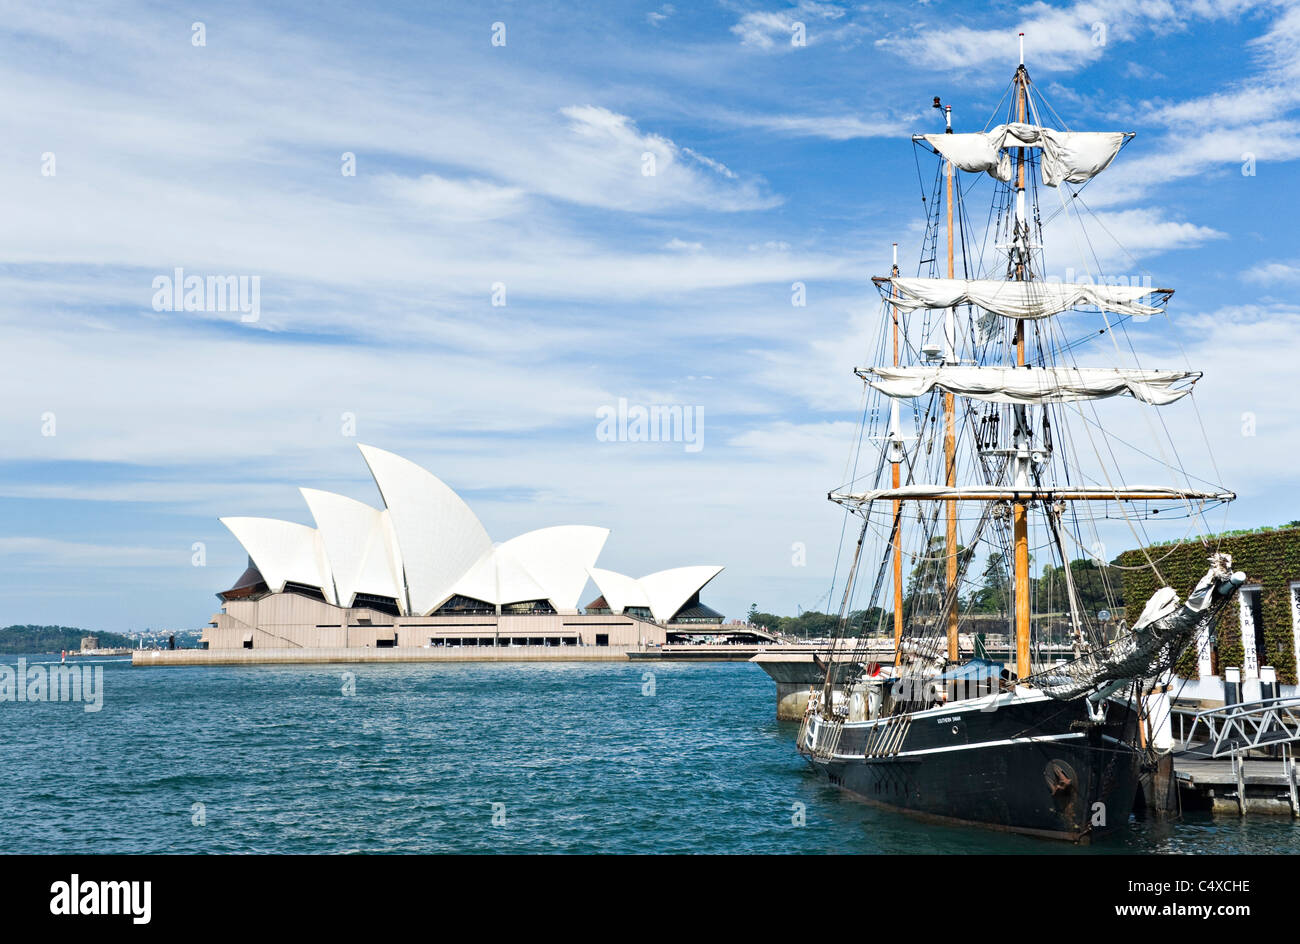 La partie sud de l'Yacht accosté près de Swan les rochers avec en arrière-plan de l'Opéra de Sydney NSW Australie Banque D'Images